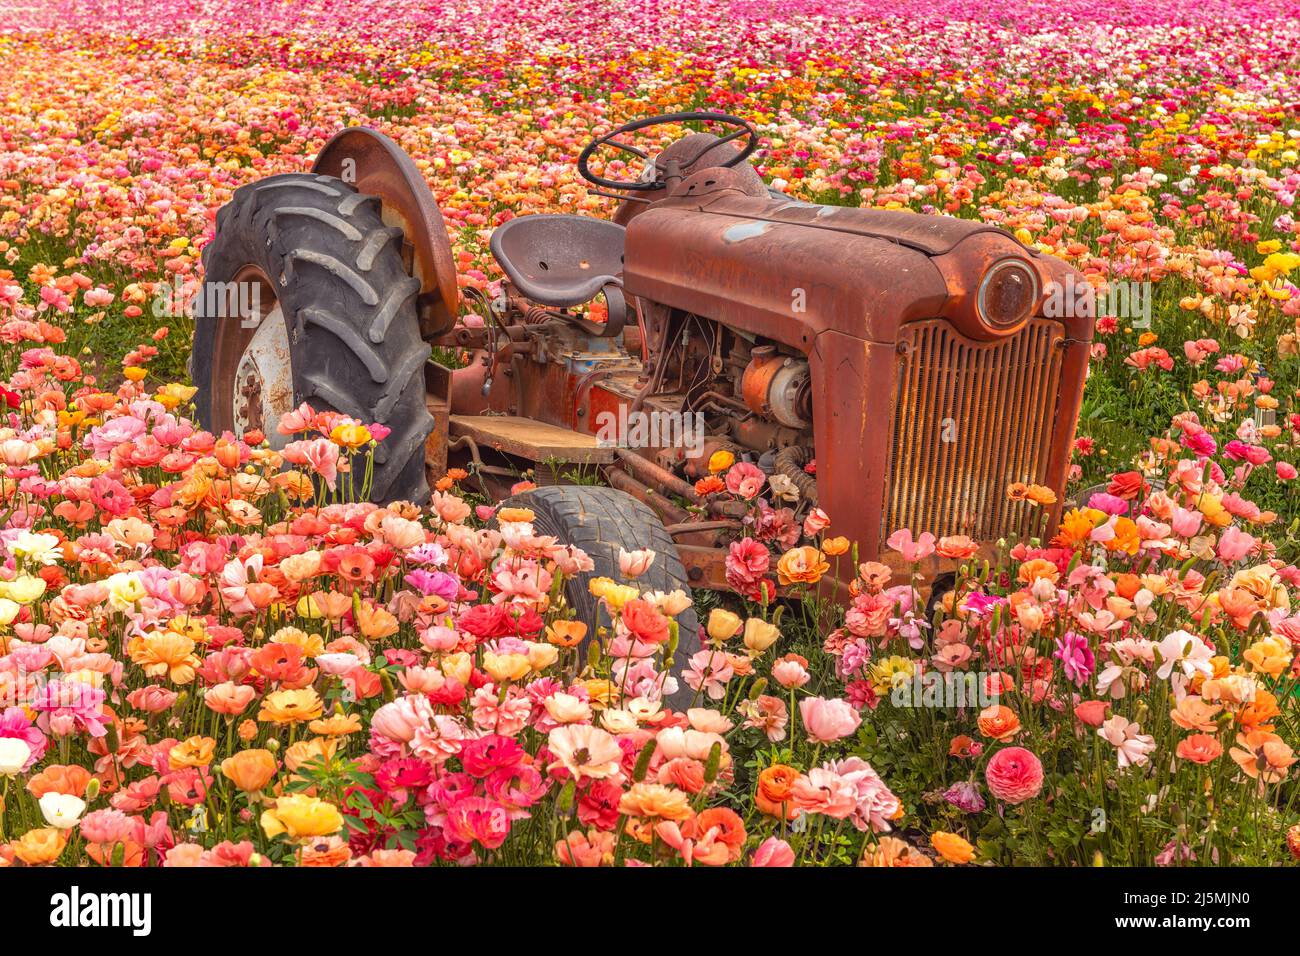 Un viejo tractor oxidado abandonado descansa entre un campo de coloridas flores ranunculus durante la primavera en California. Foto de stock